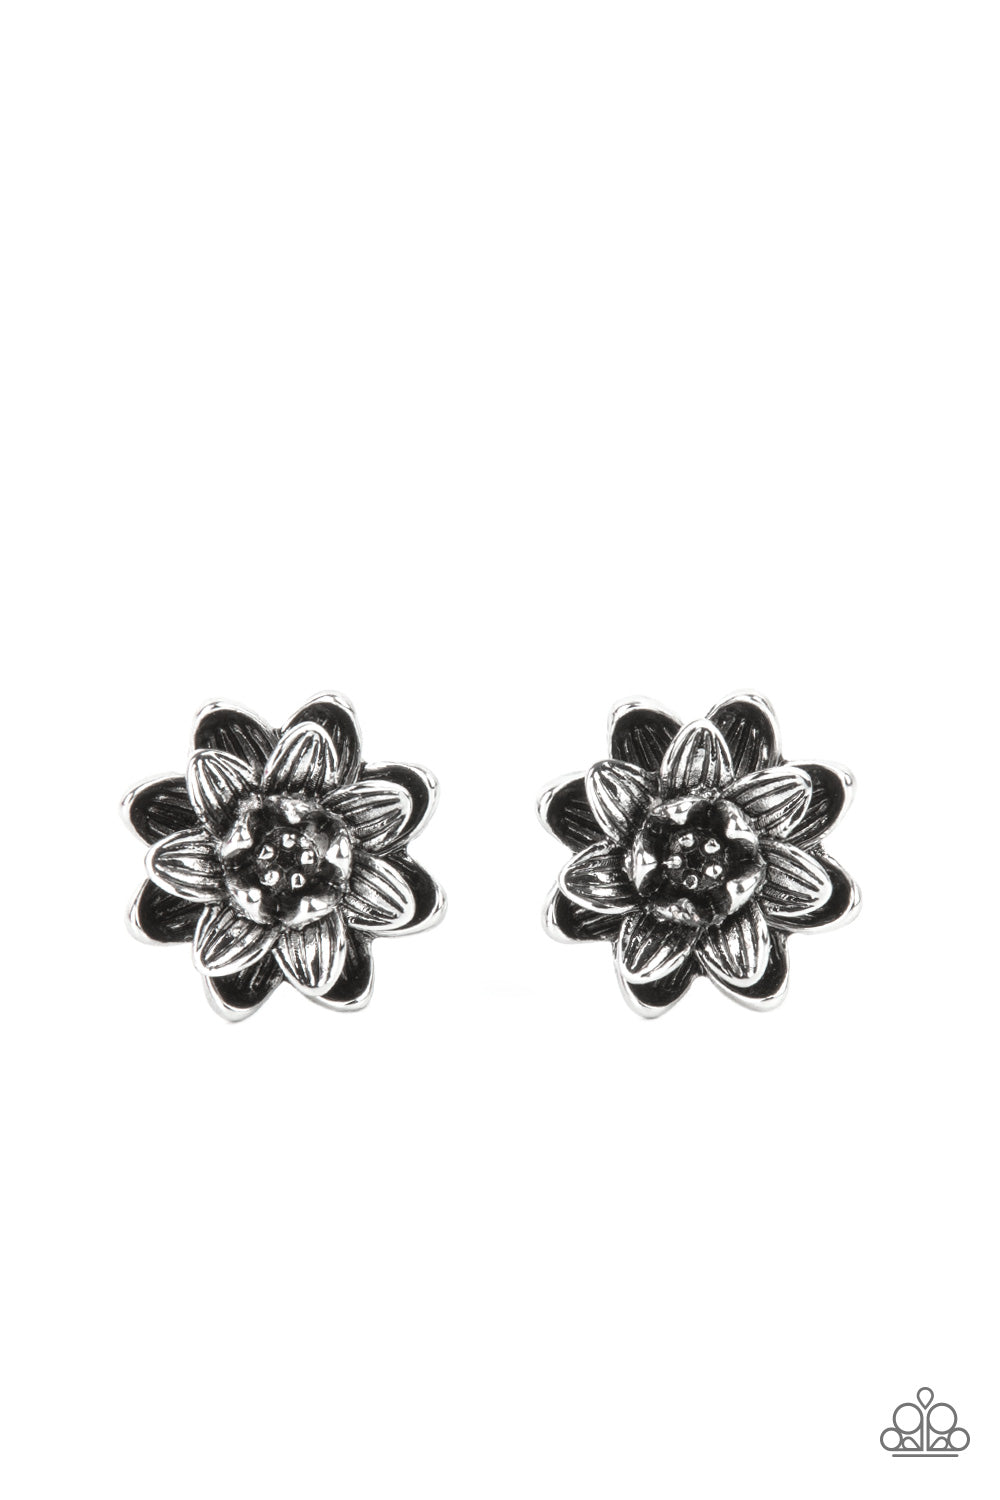 Paparazzi - Water Lily Love - Silver Flower Earrings